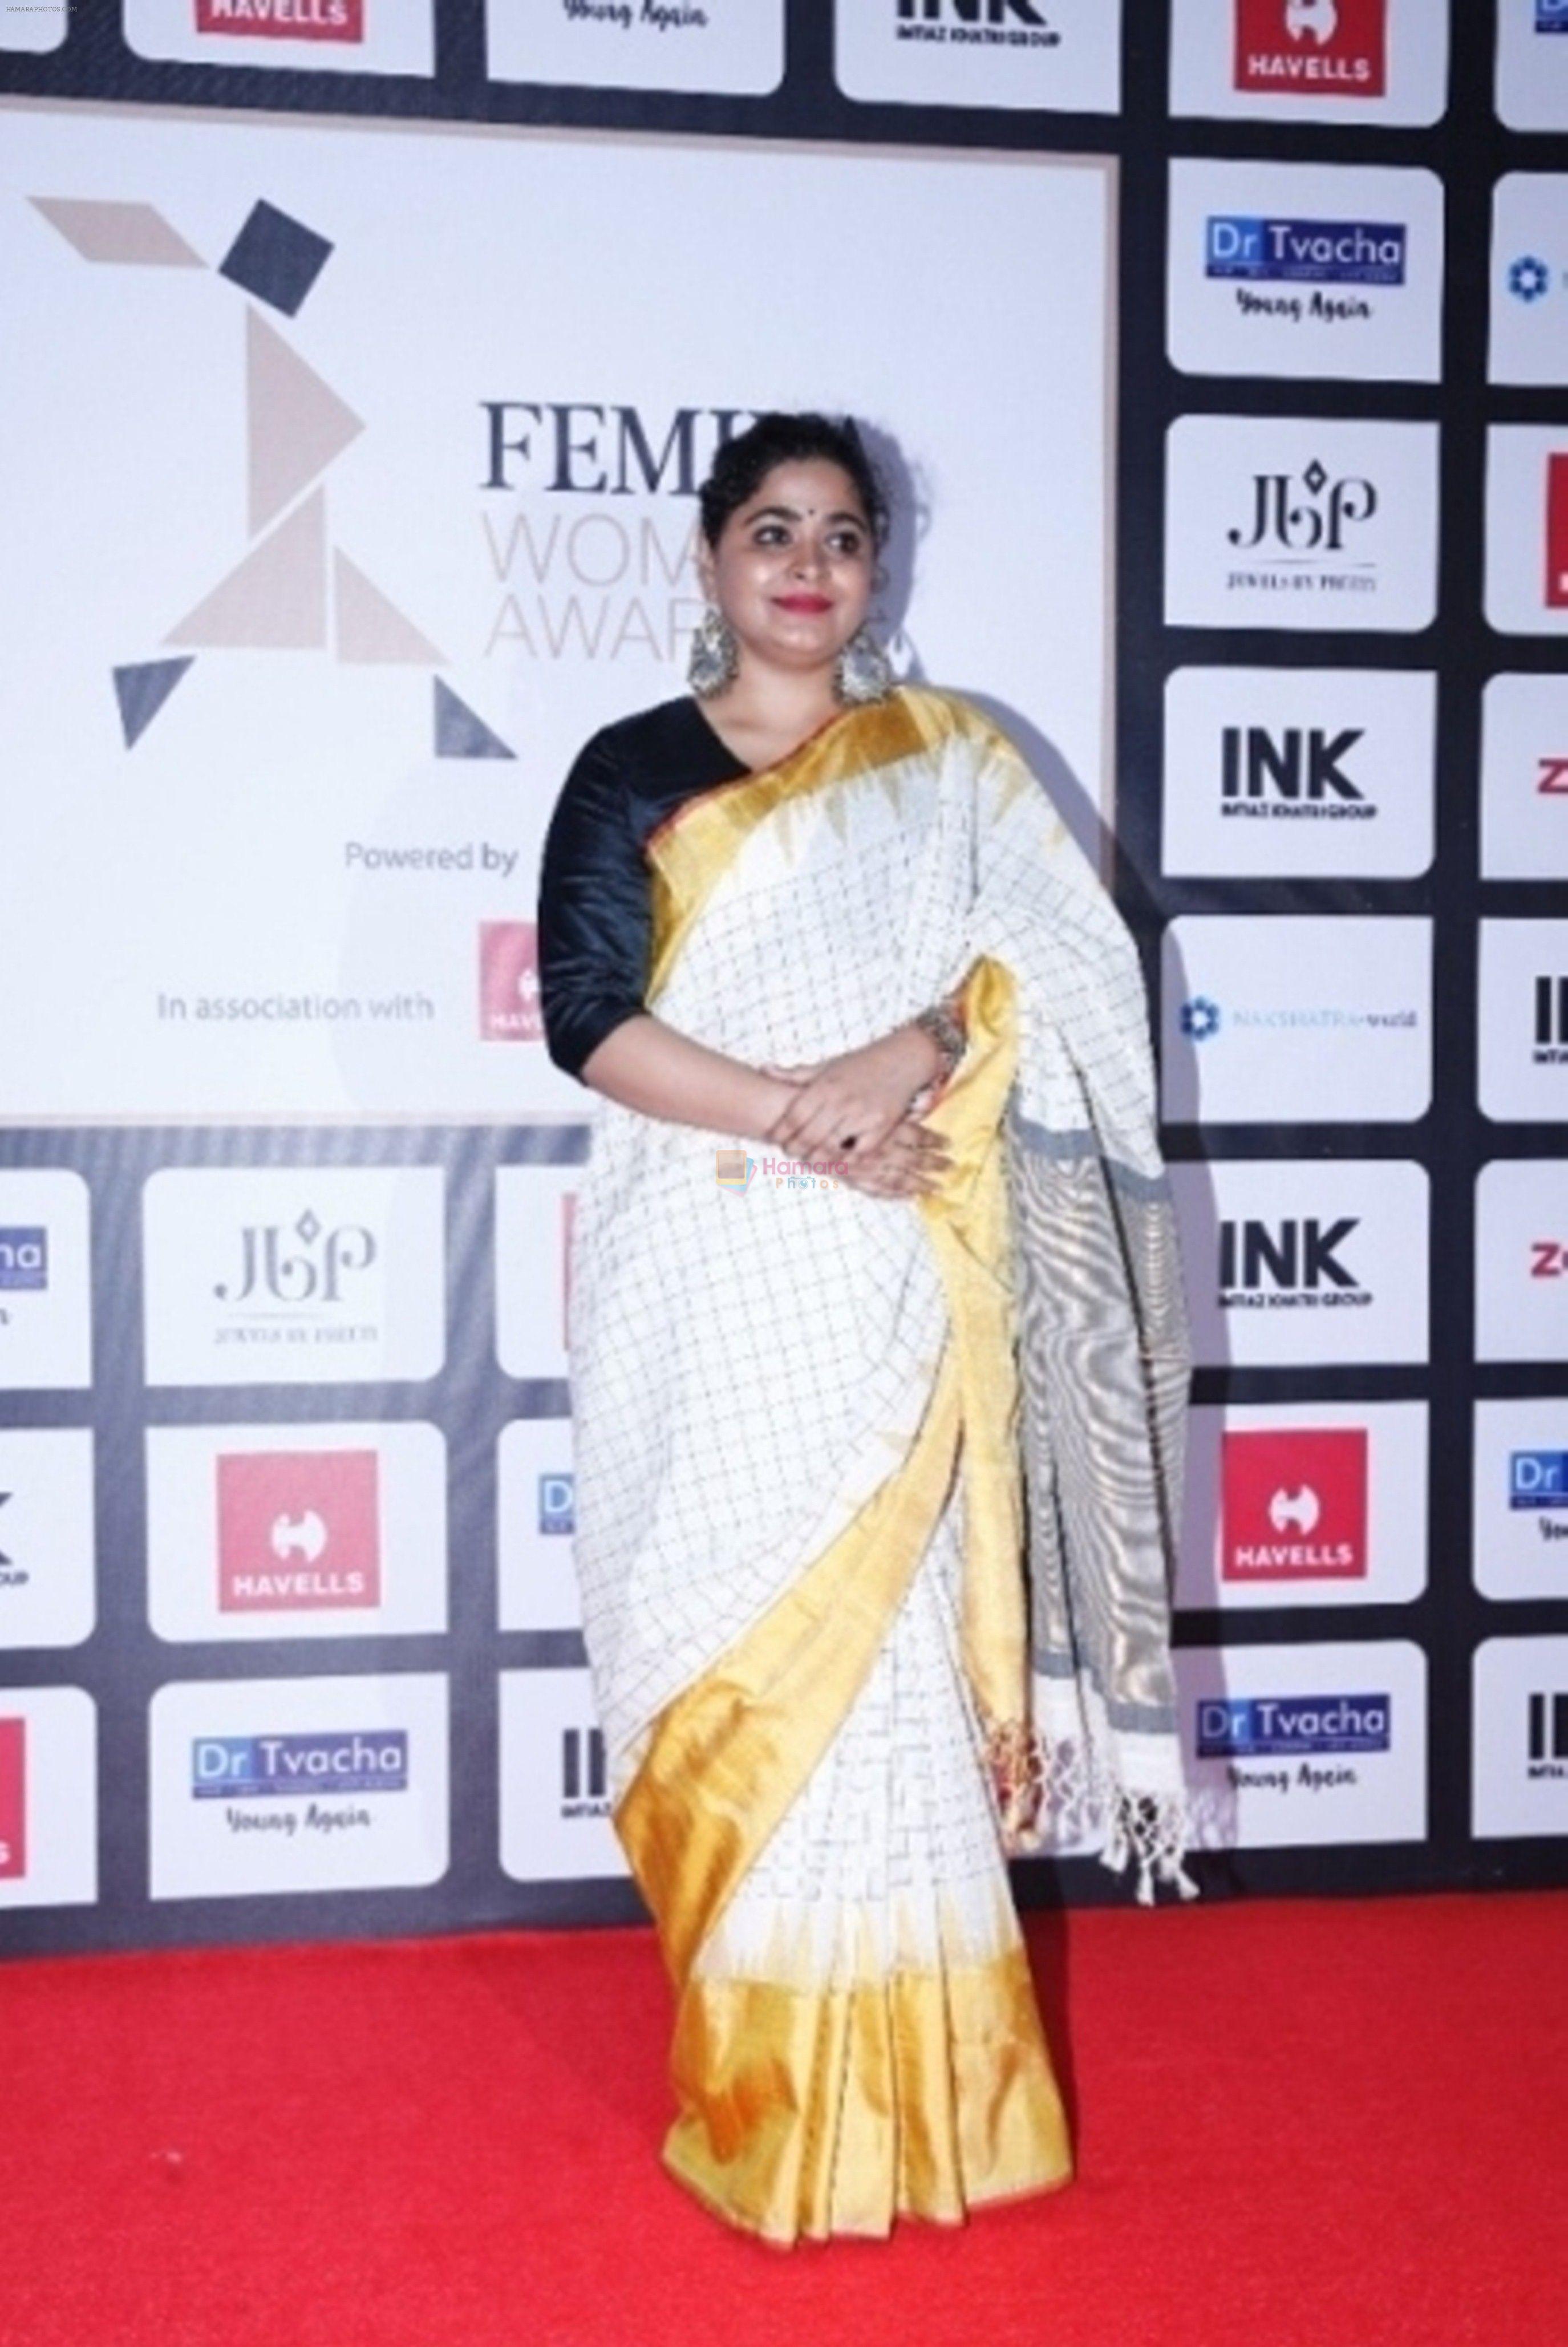 Ashwiny Iyer Tiwari at Femina Women's Award 2017 on 28th June 2017